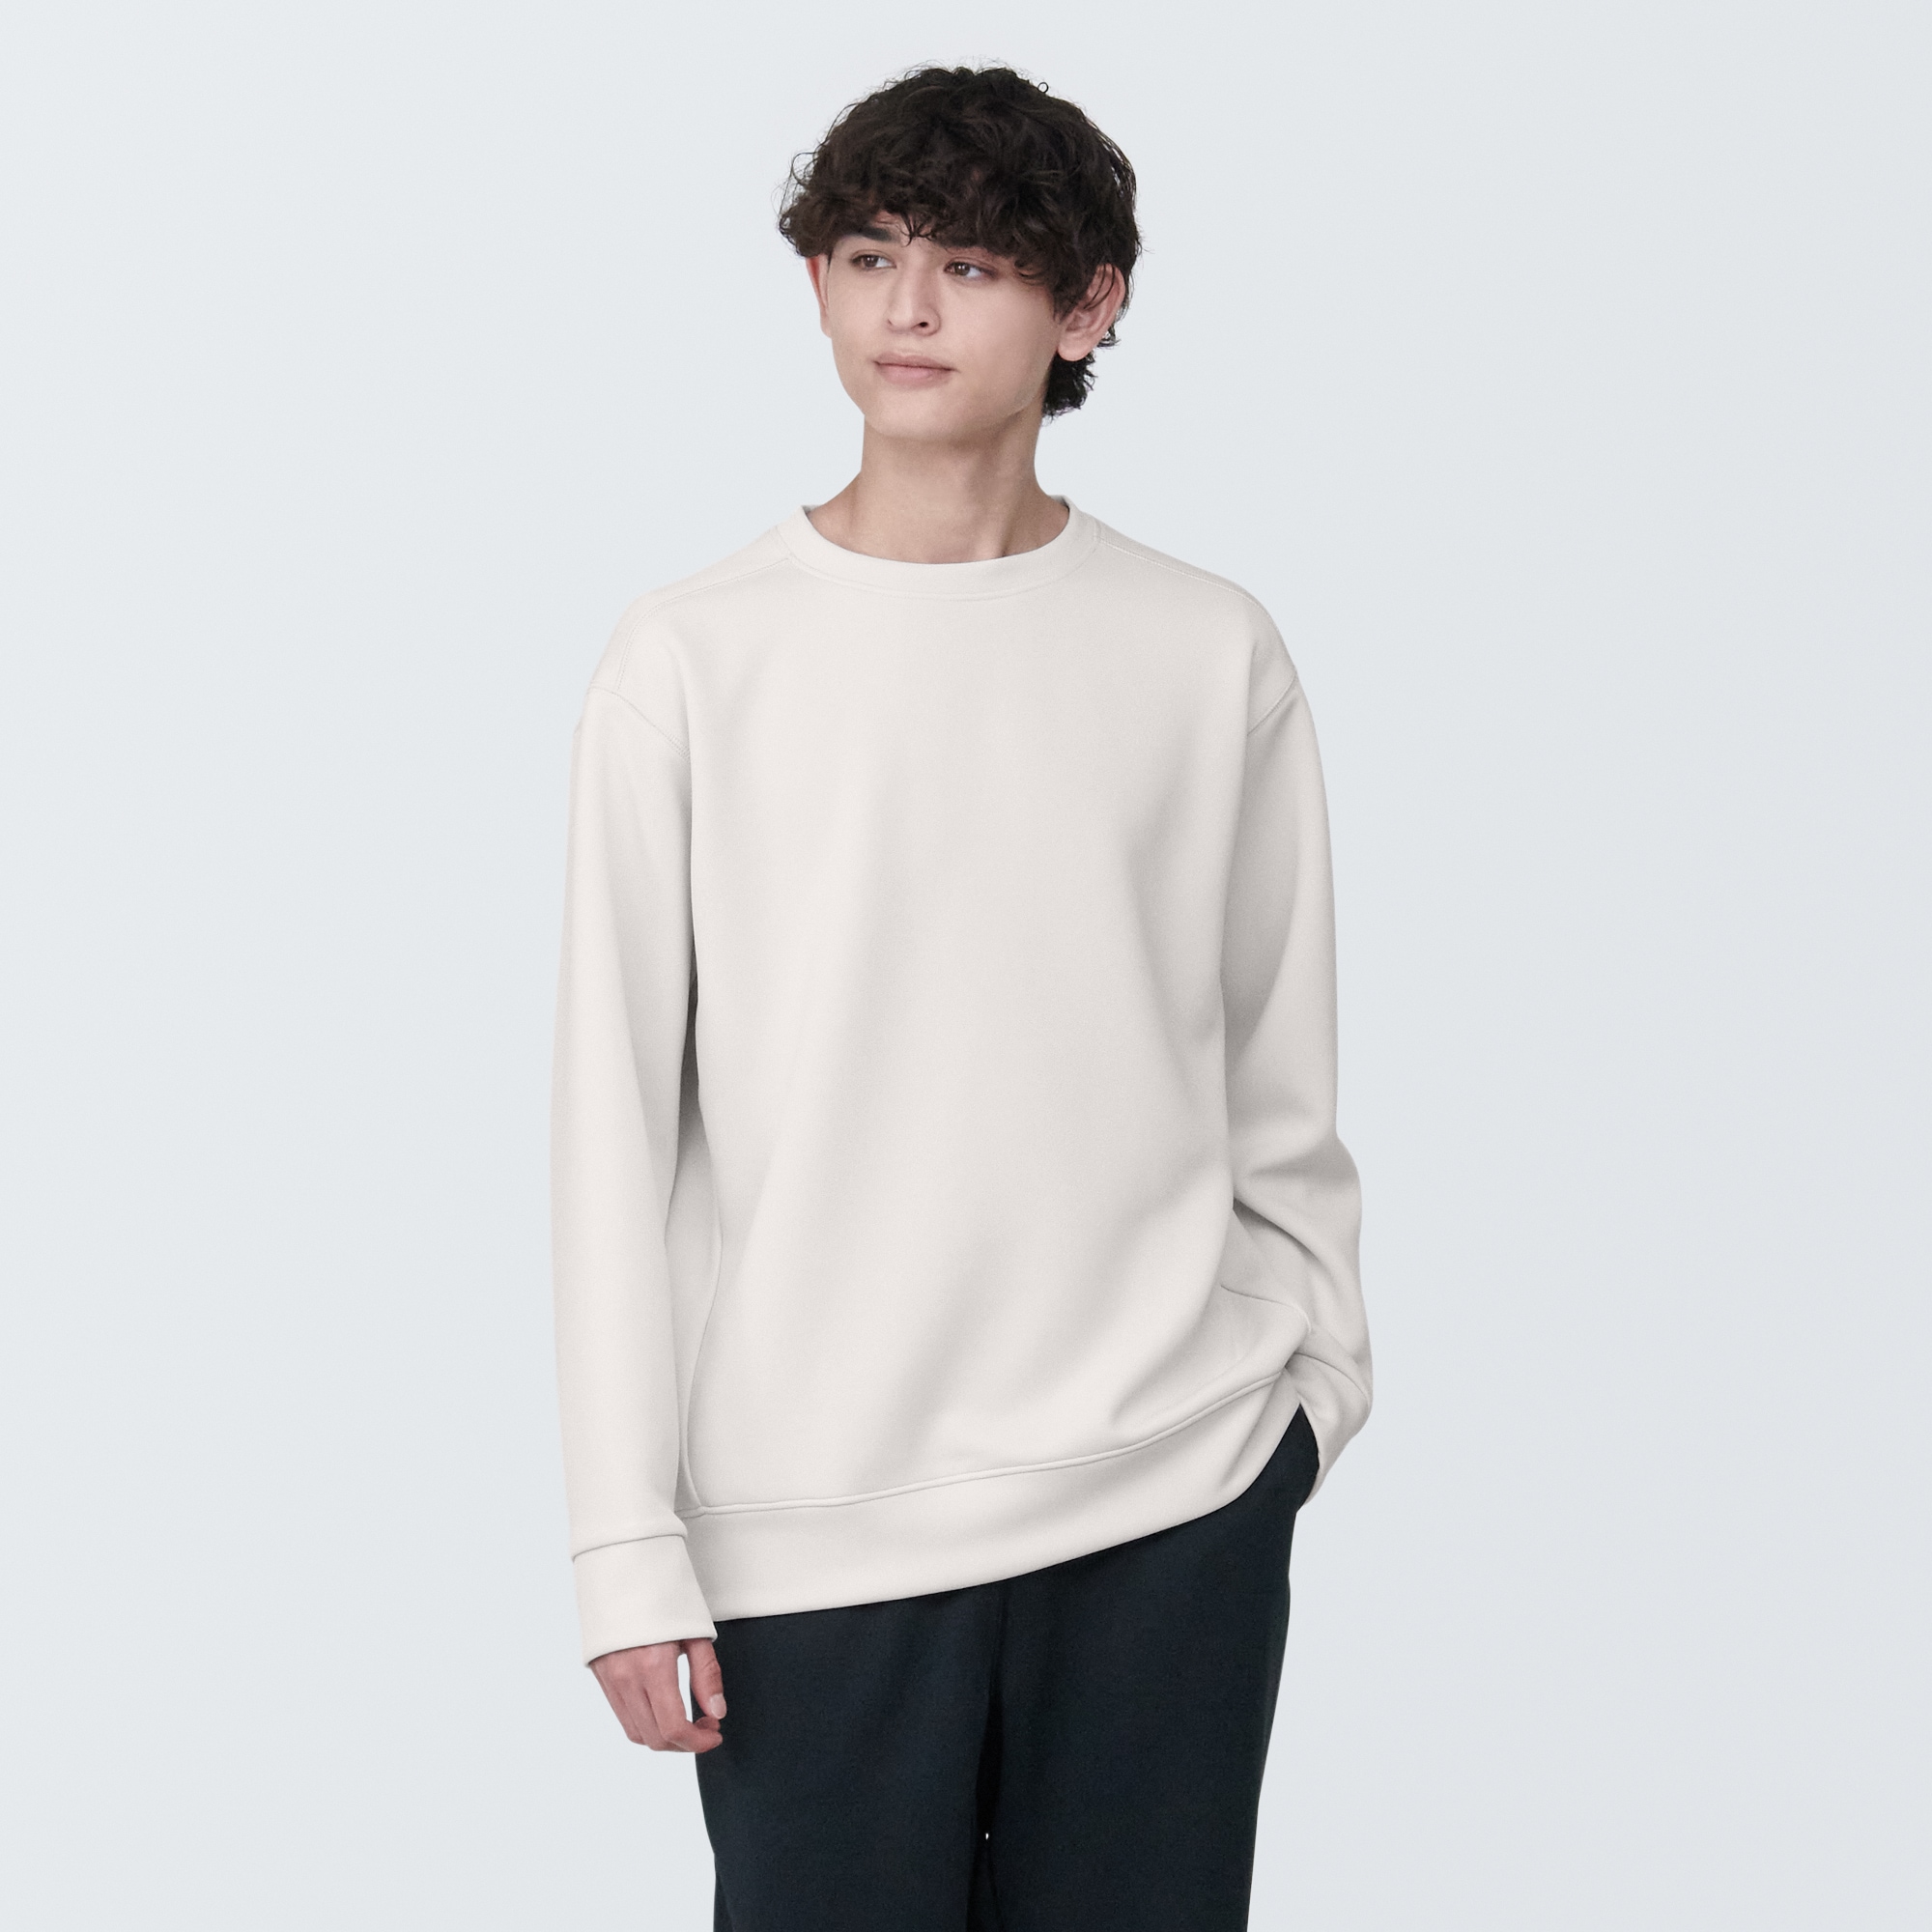 무인양품 일본 신사 자외선 차단 건조 빠른 스웨터 셔츠